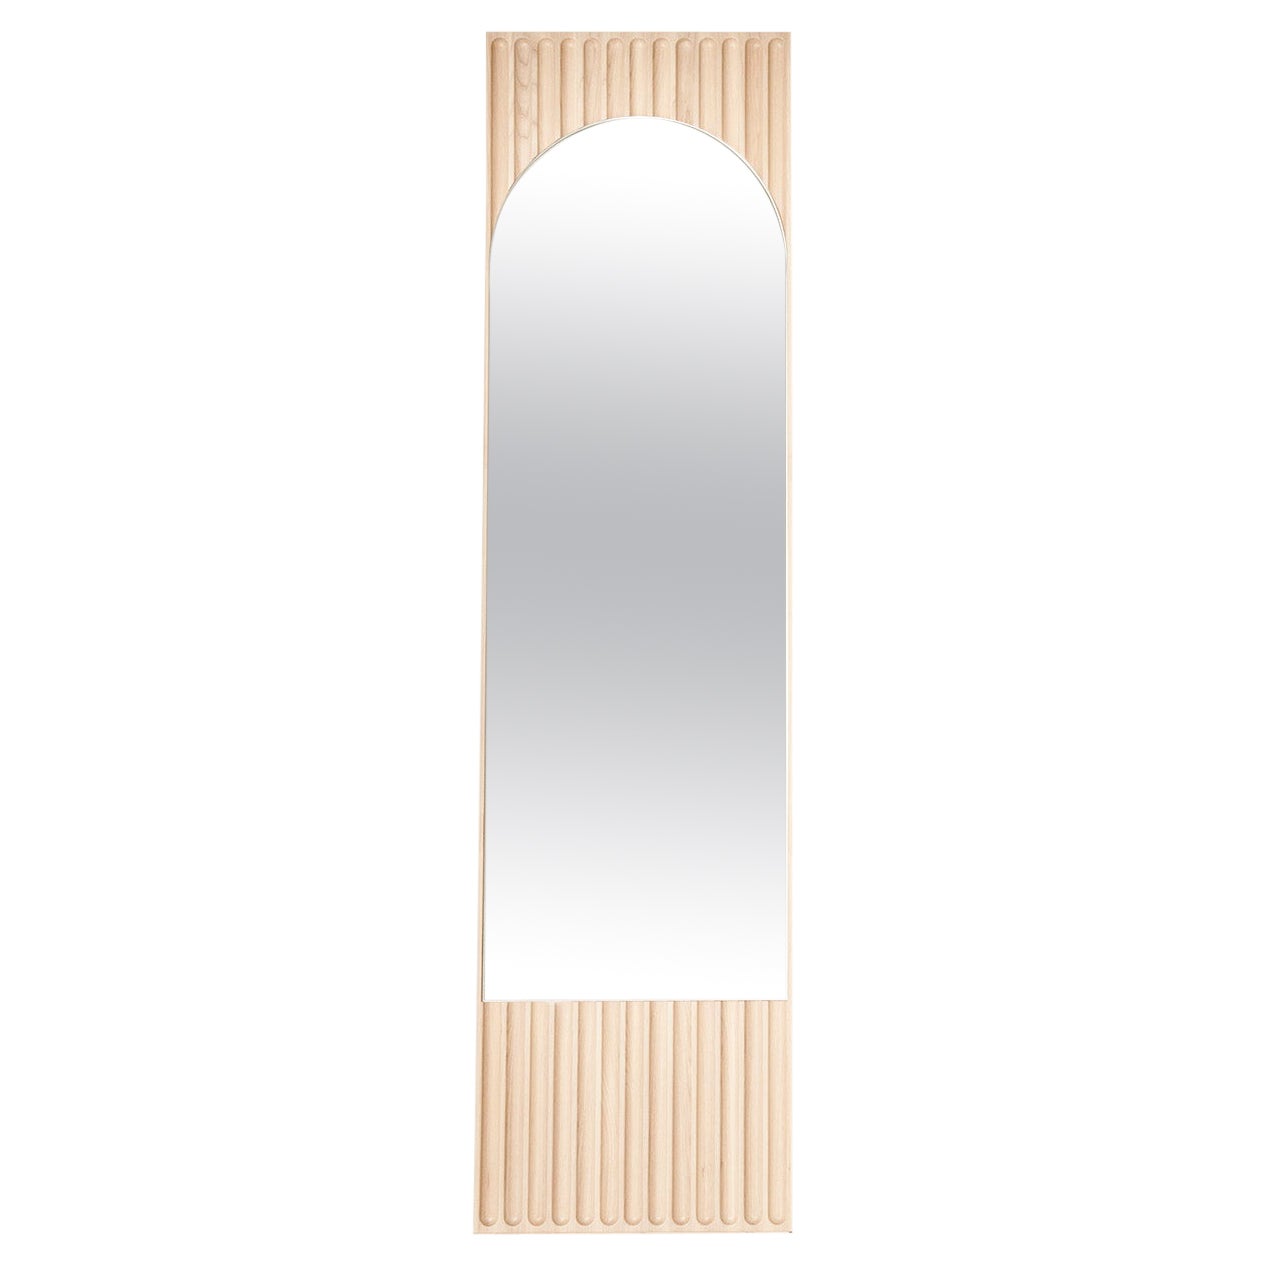 Sesto, rechteckiger Spiegel aus Massivholz, Eschenholz in natürlicher Oberfläche, zeitgenössisch